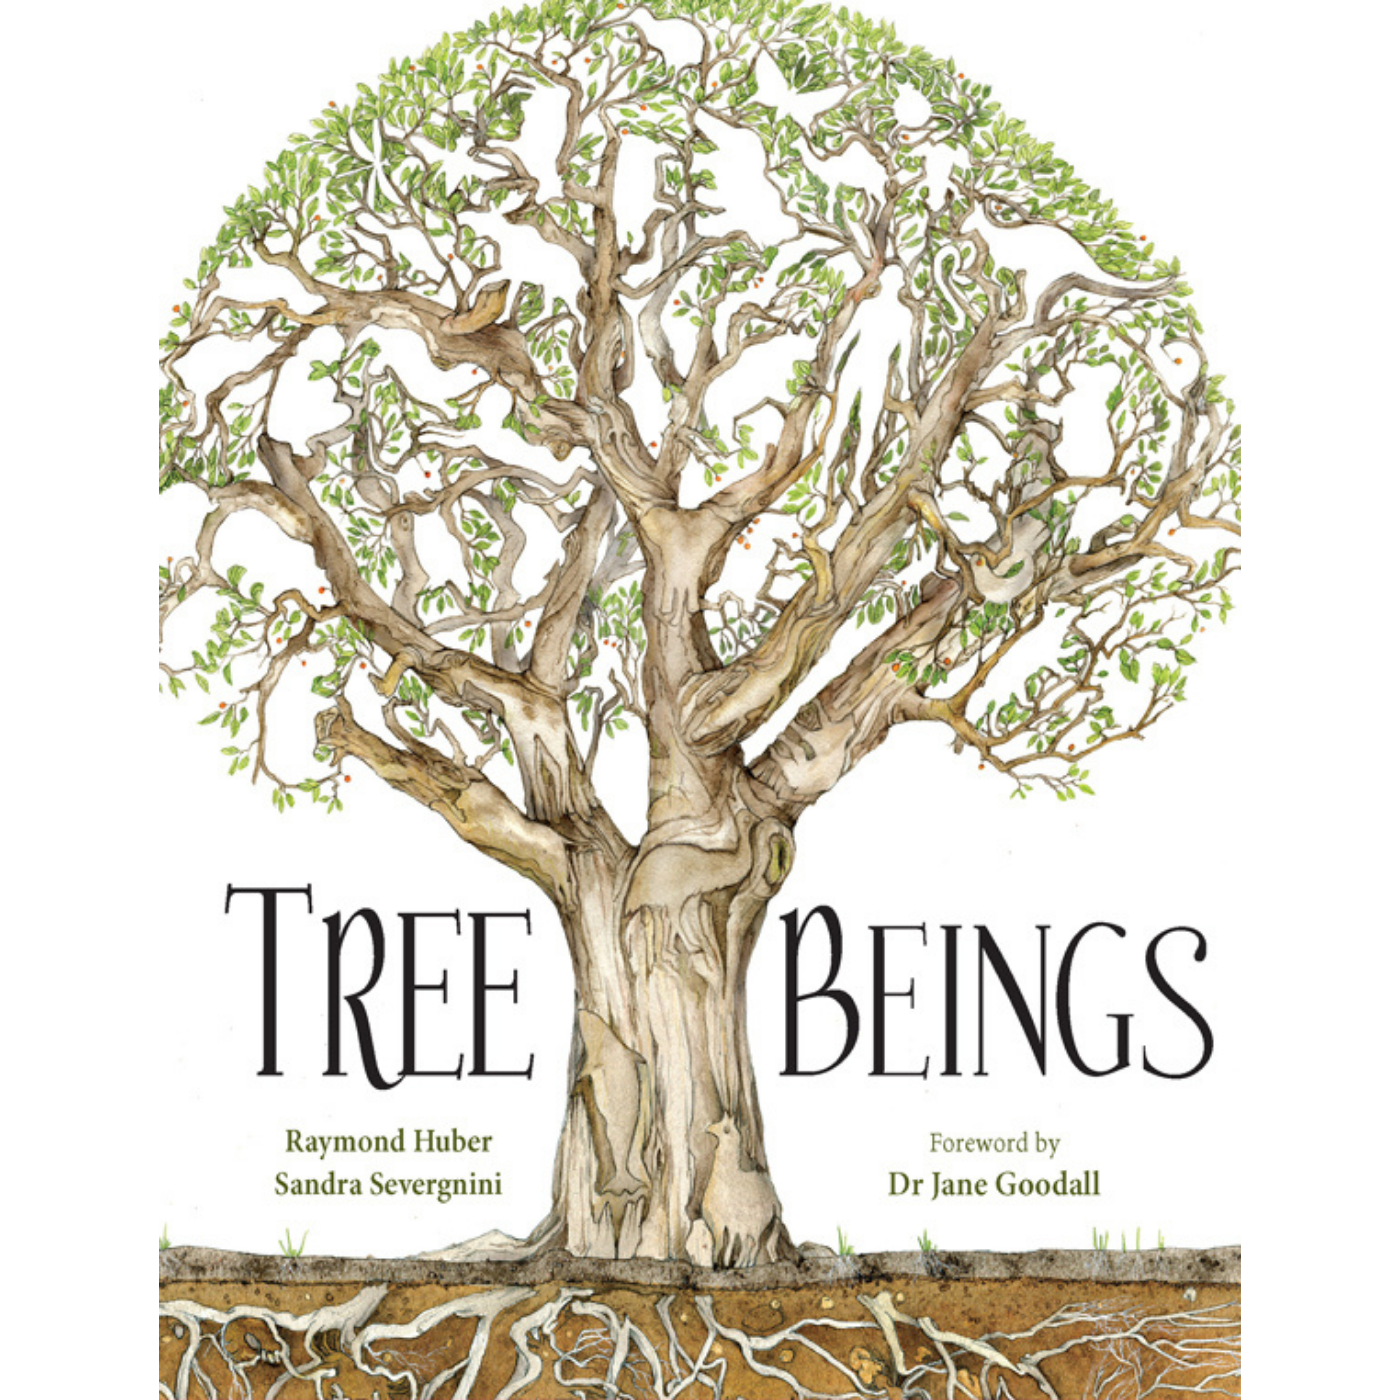 Tree Beings